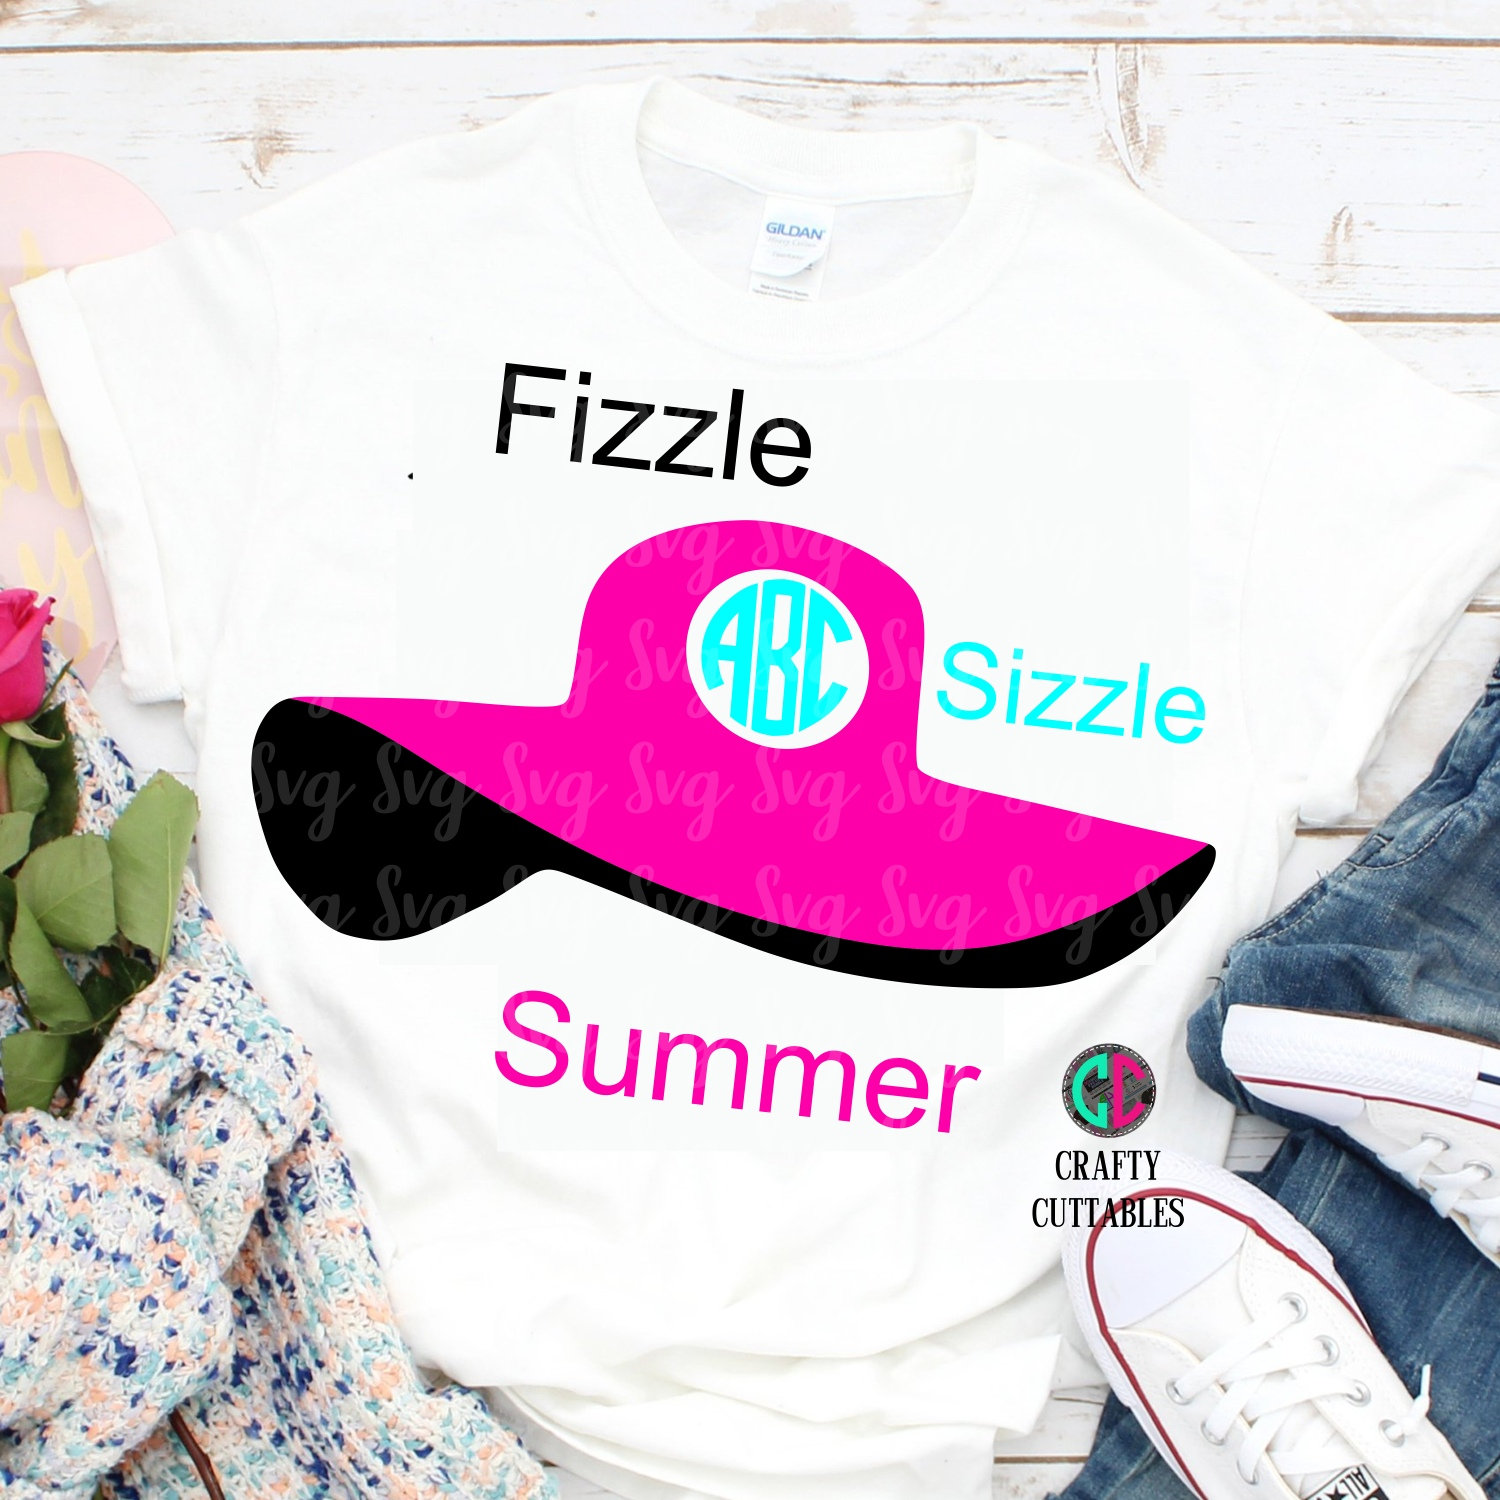 Fizzle sizzle summer.